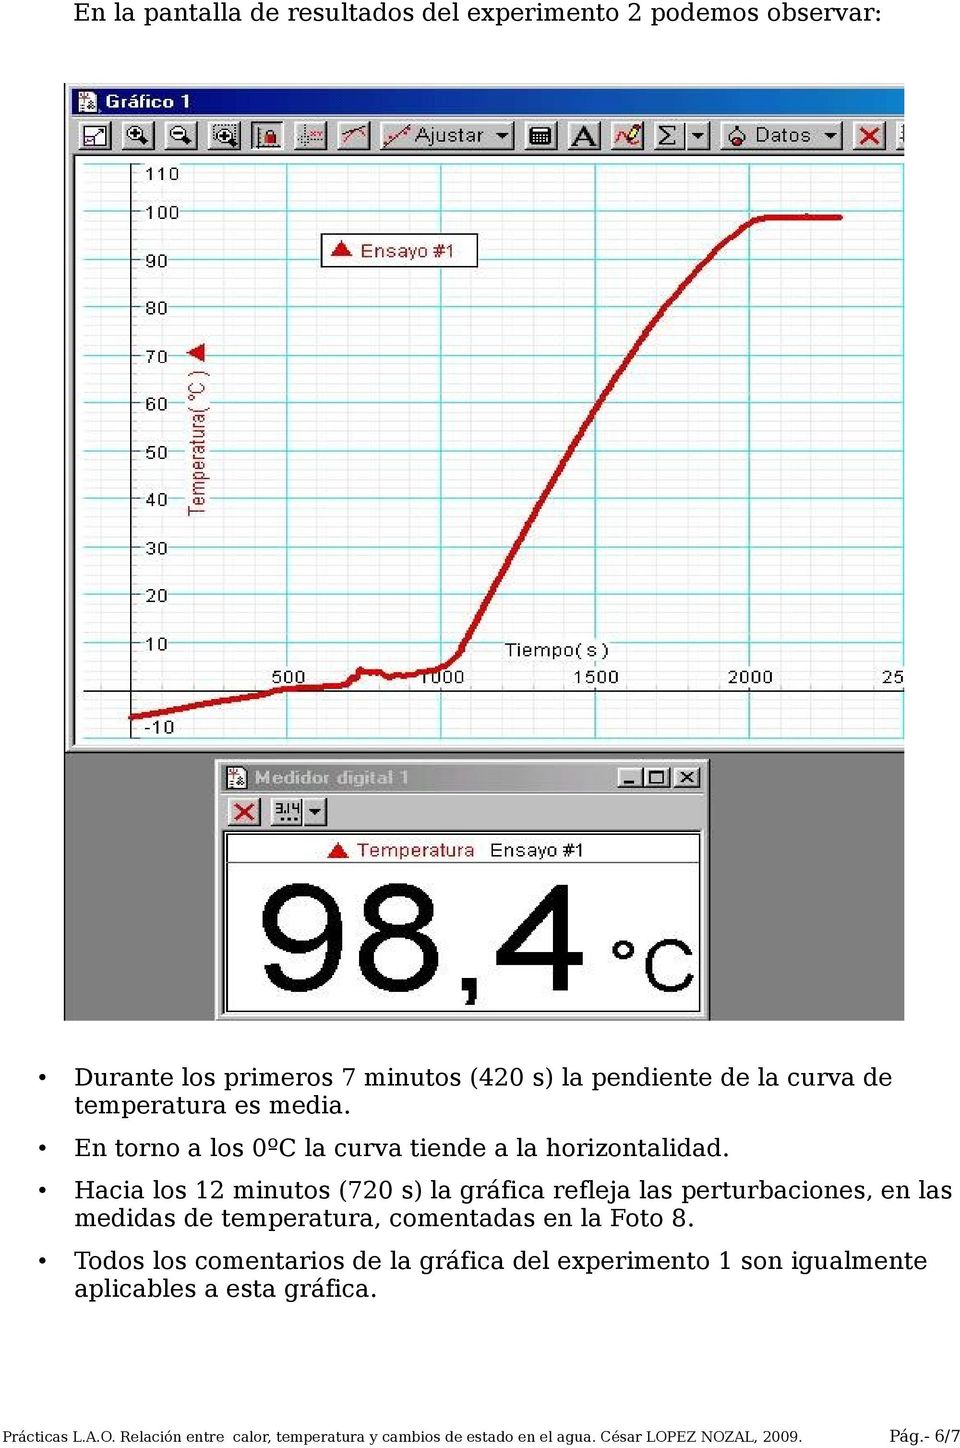 Hacia los 12 minutos (720 s) la gráfica refleja las perturbaciones, en las medidas de temperatura, comentadas en la Foto 8.